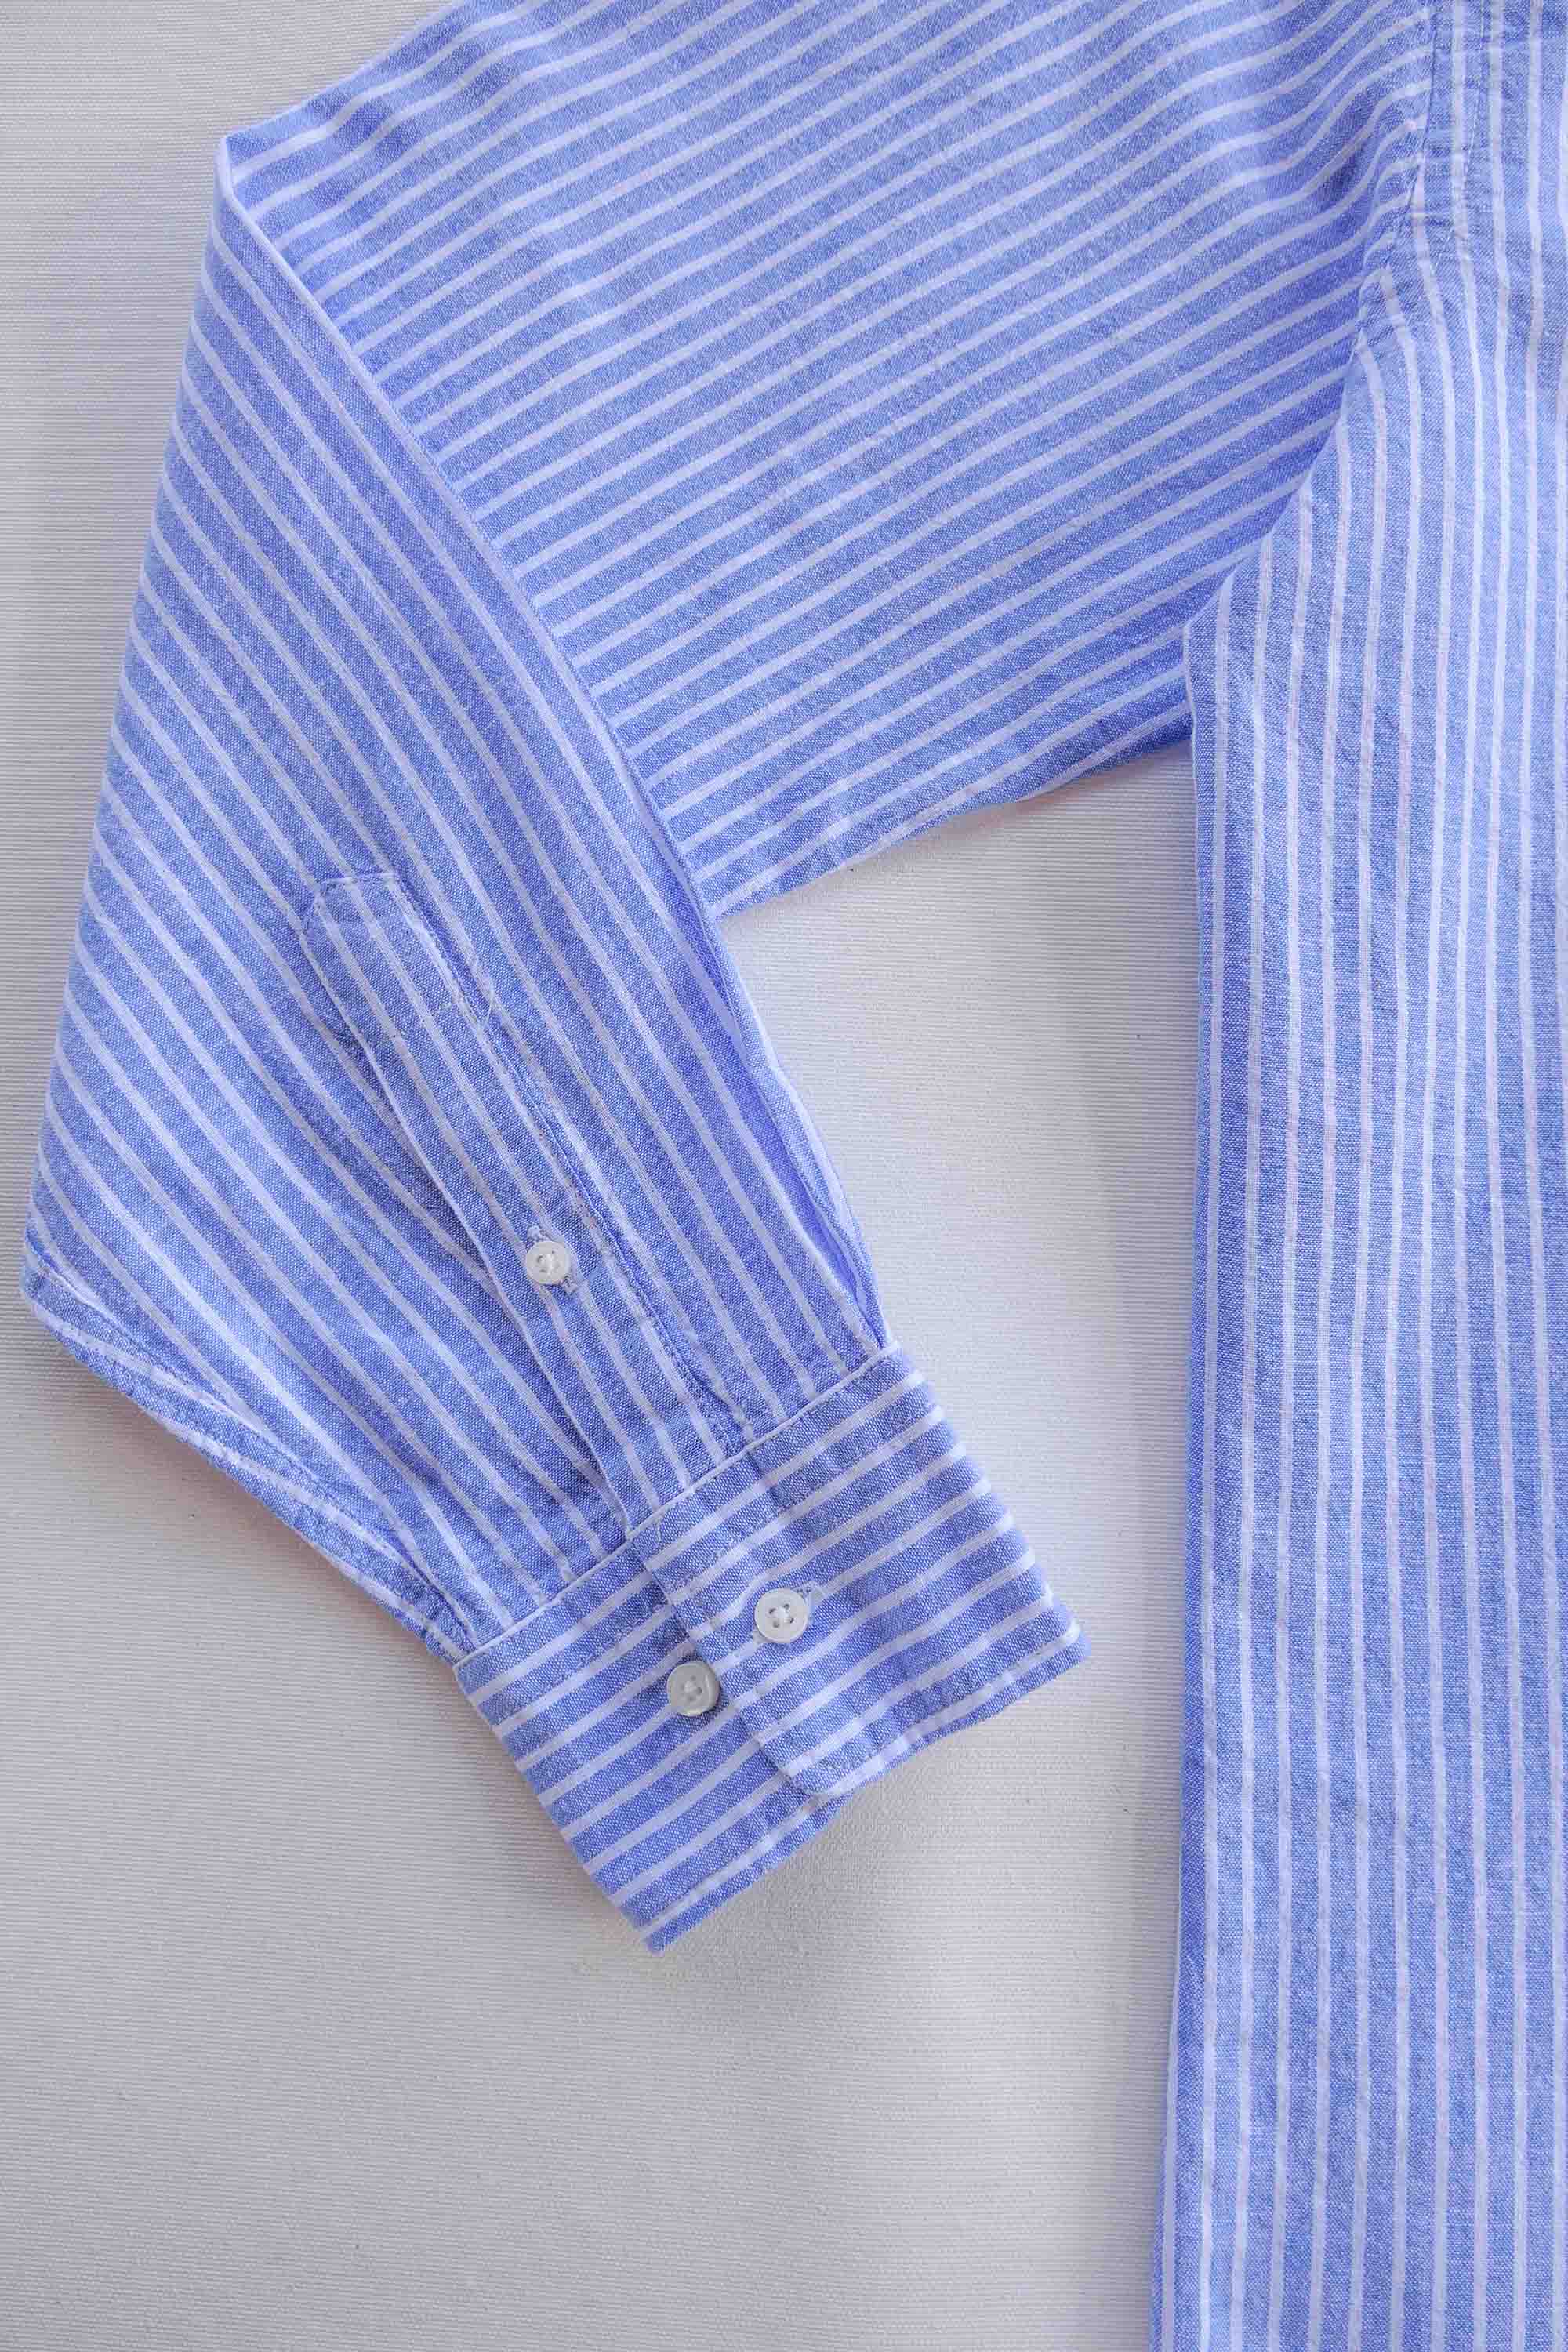 Camisa de Lino - Rayas Azul y Blanco